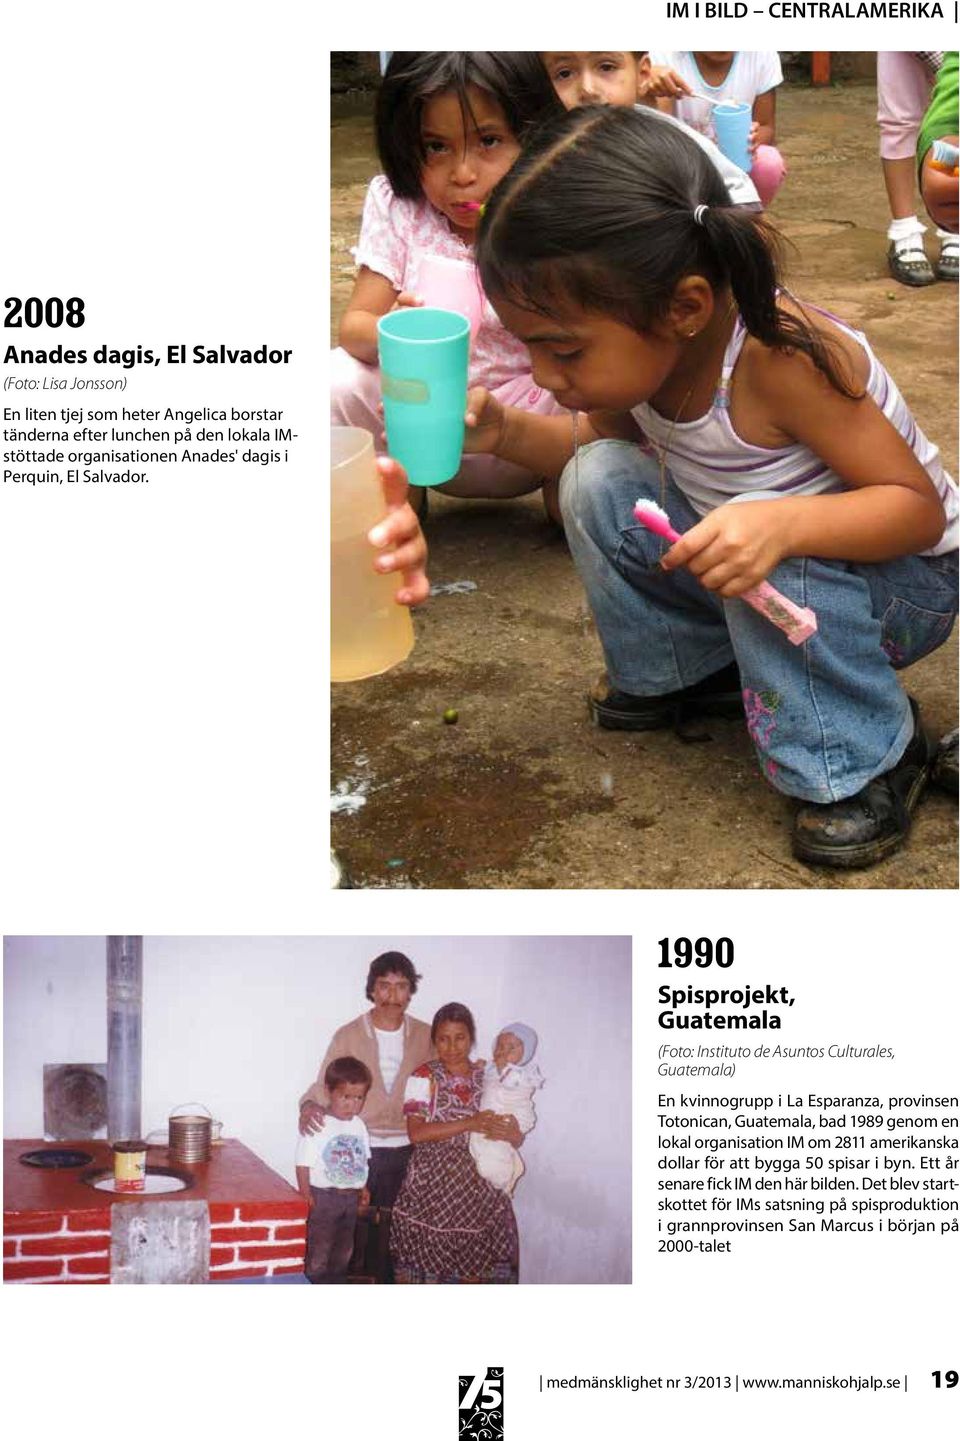 1990 Spisprojekt, Guatemala (Foto: Instituto de Asuntos Culturales, Guatemala) En kvinnogrupp i La Esparanza, provinsen Totonican, Guatemala, bad 1989